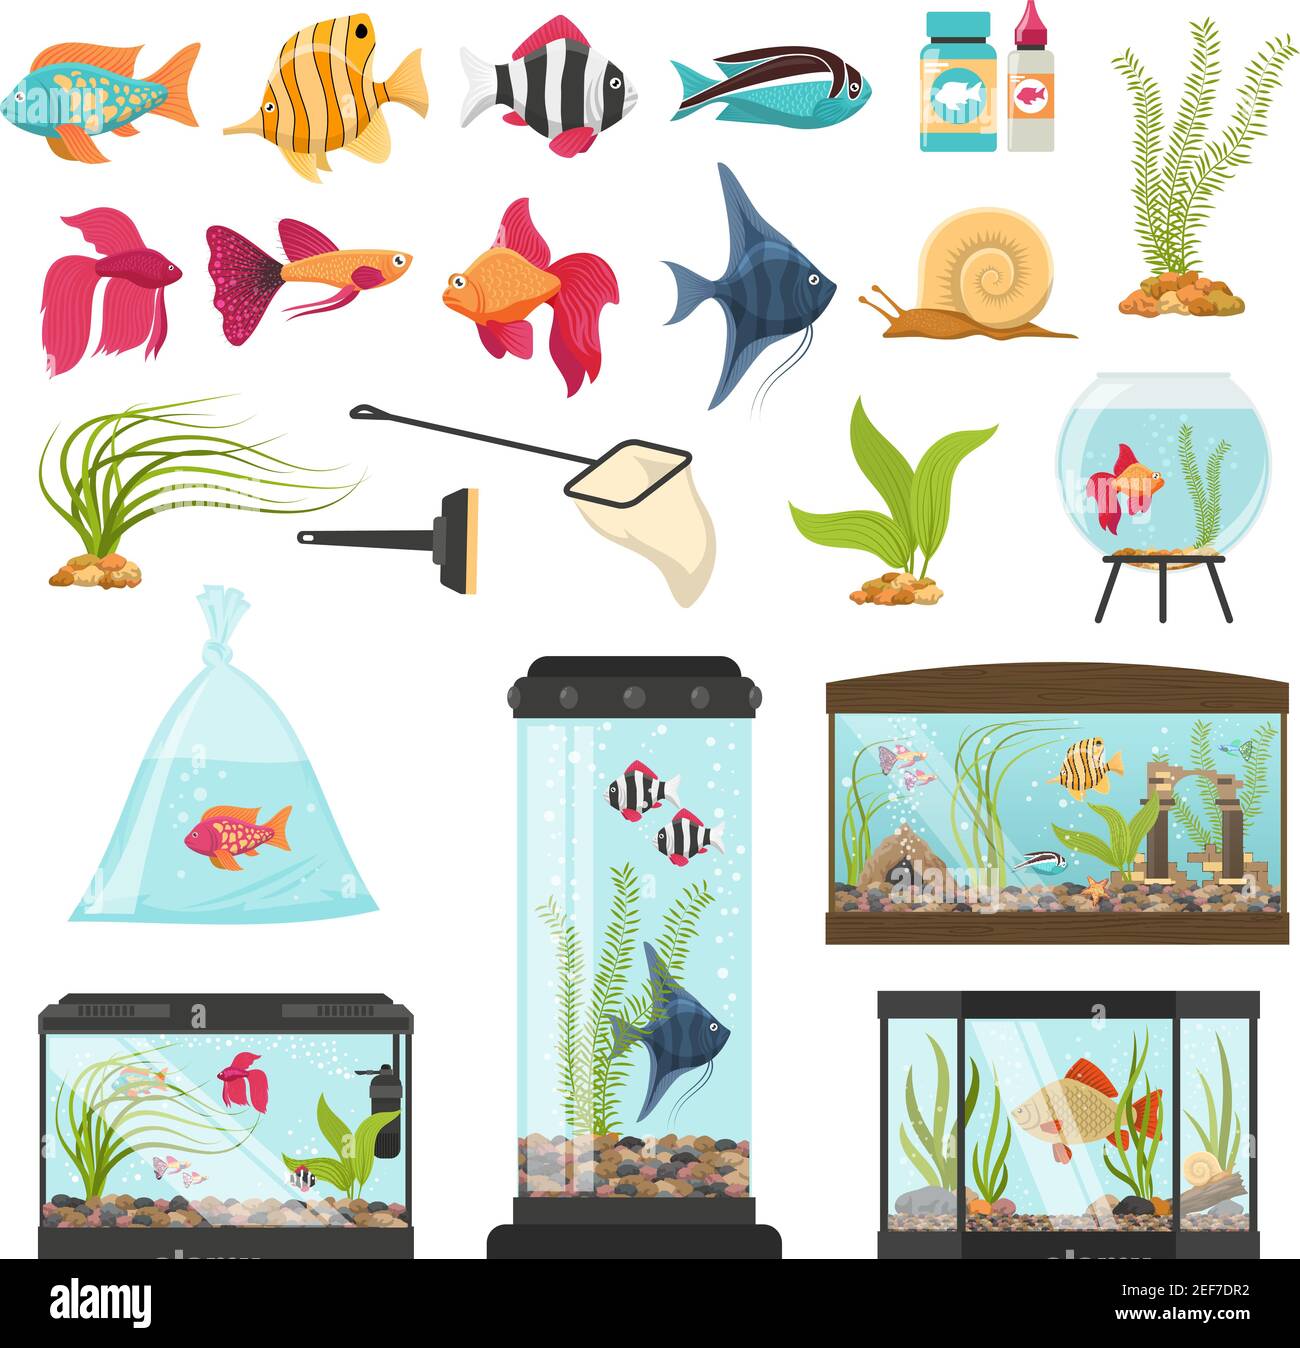 Acuario conjunto de peces aislados cuencos especies de agua plantas acuarios imágenes de vectores de equipamiento tendance y envasado de alimentos para pescado Ilustración del Vector